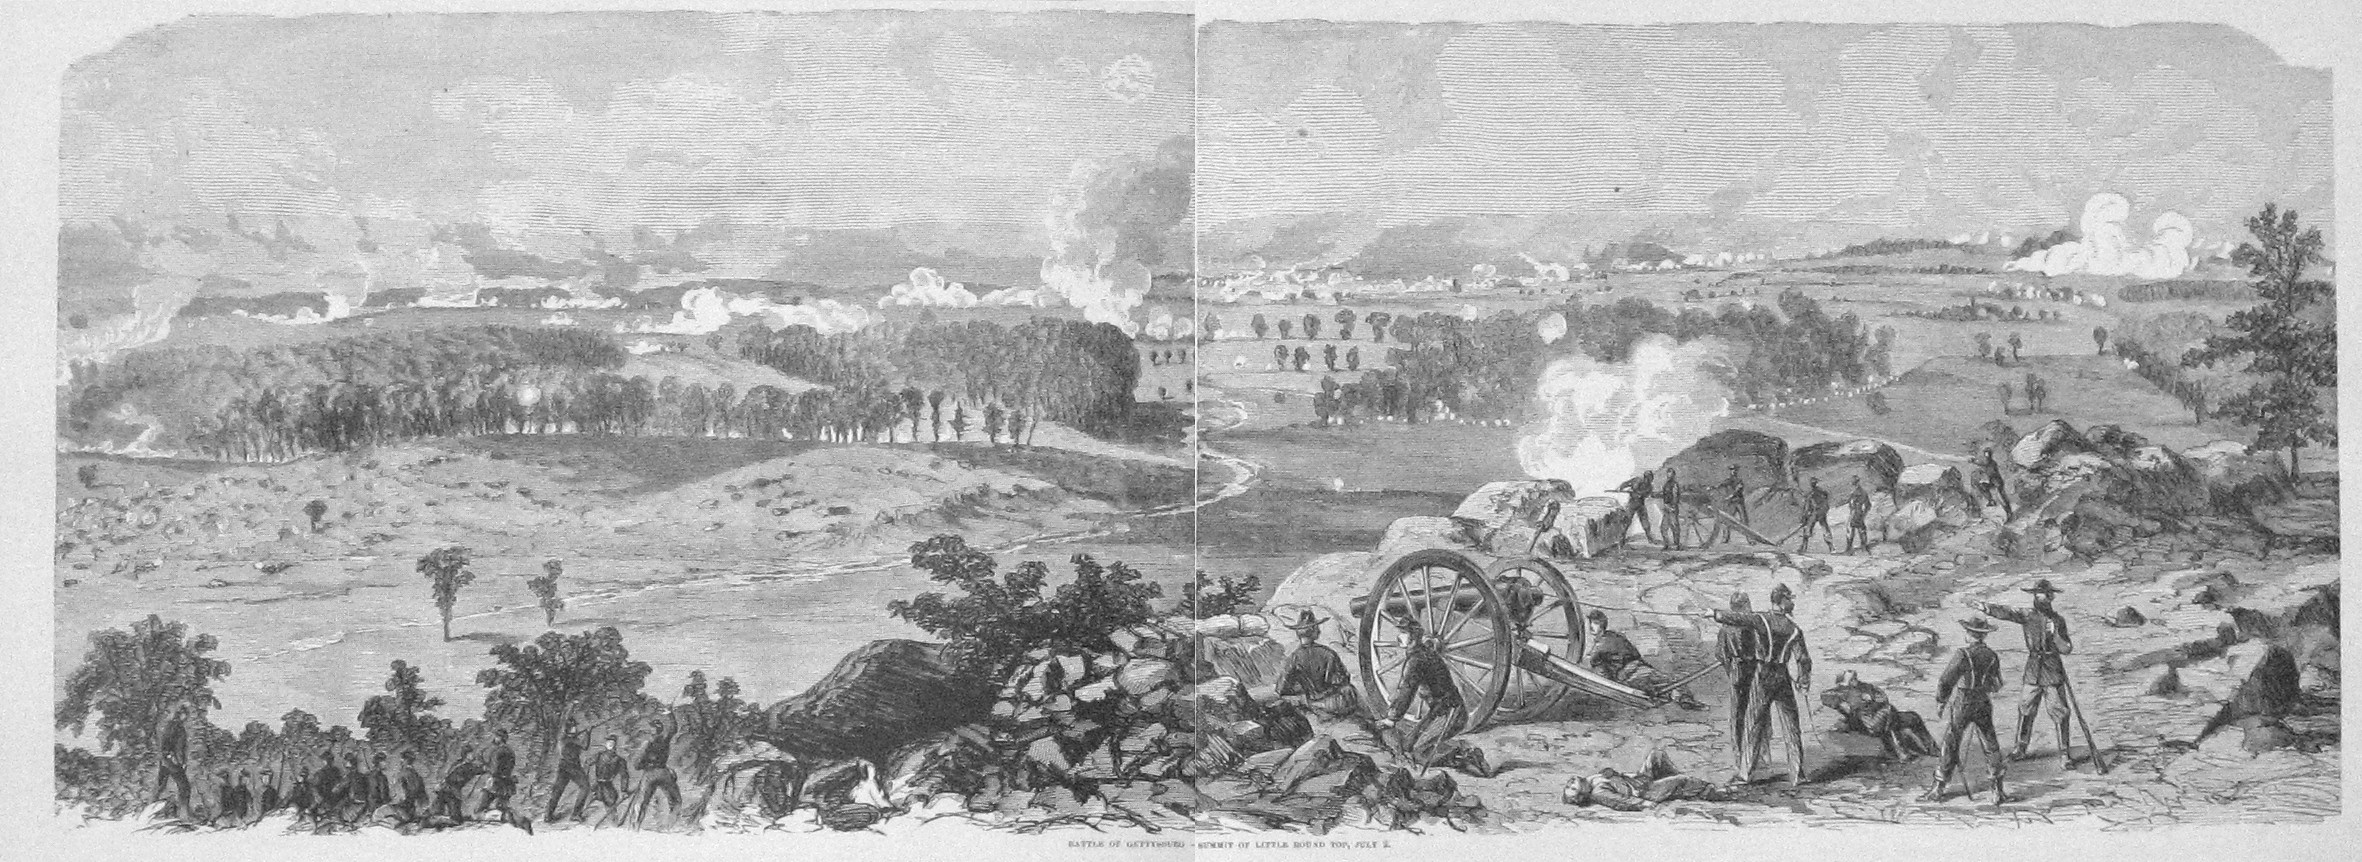 gettysburg little round top battle